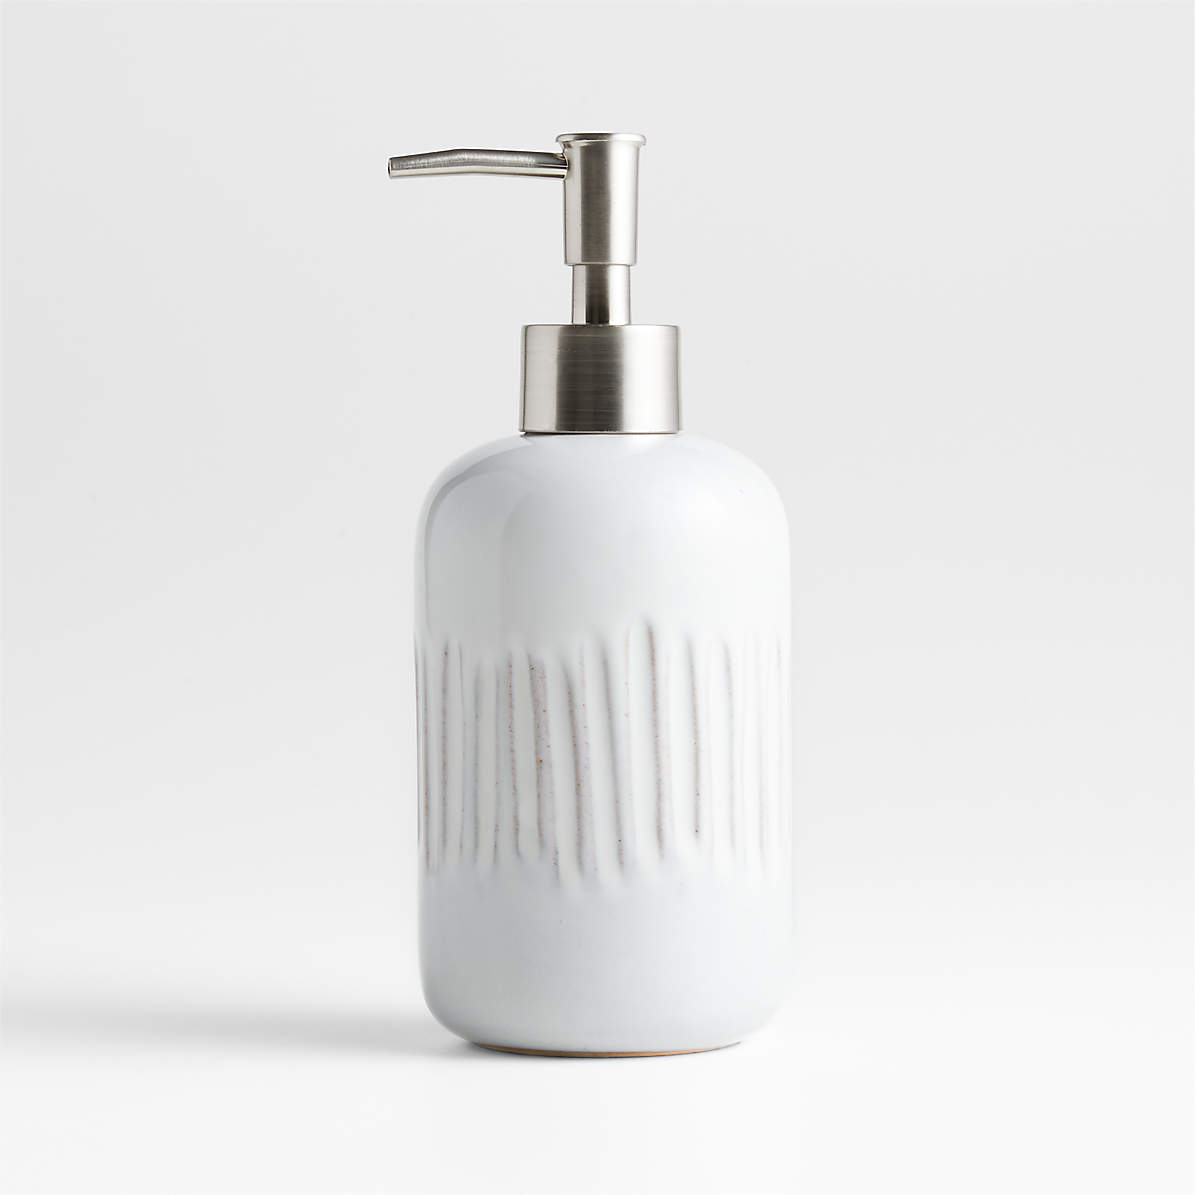 Marah White Ceramic Soap Dispenser